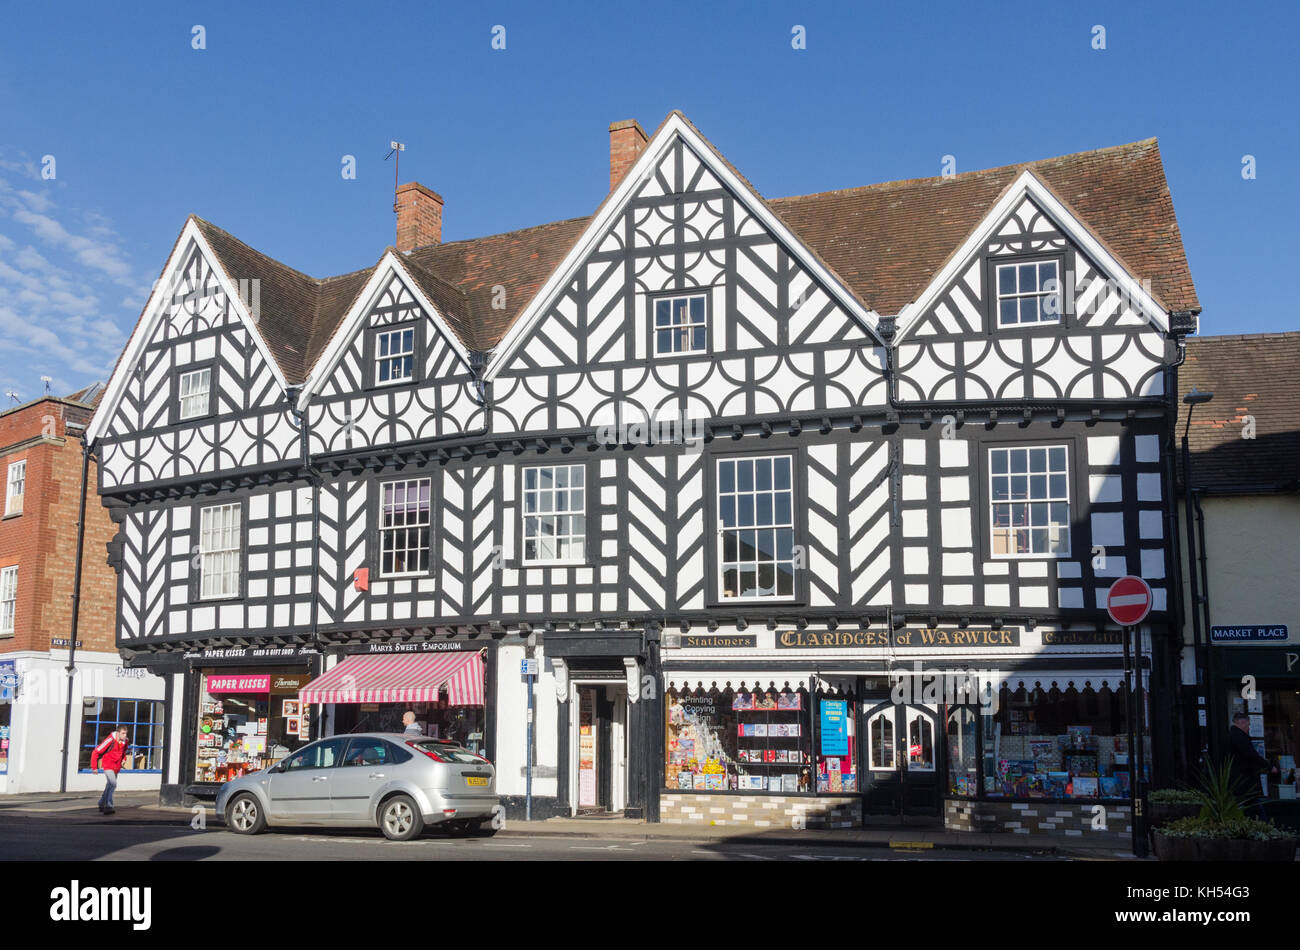 Reihe von Geschäften in Schwarz und Weiß Fachwerkhaus in Market place, Warwick, Großbritannien Stockfoto